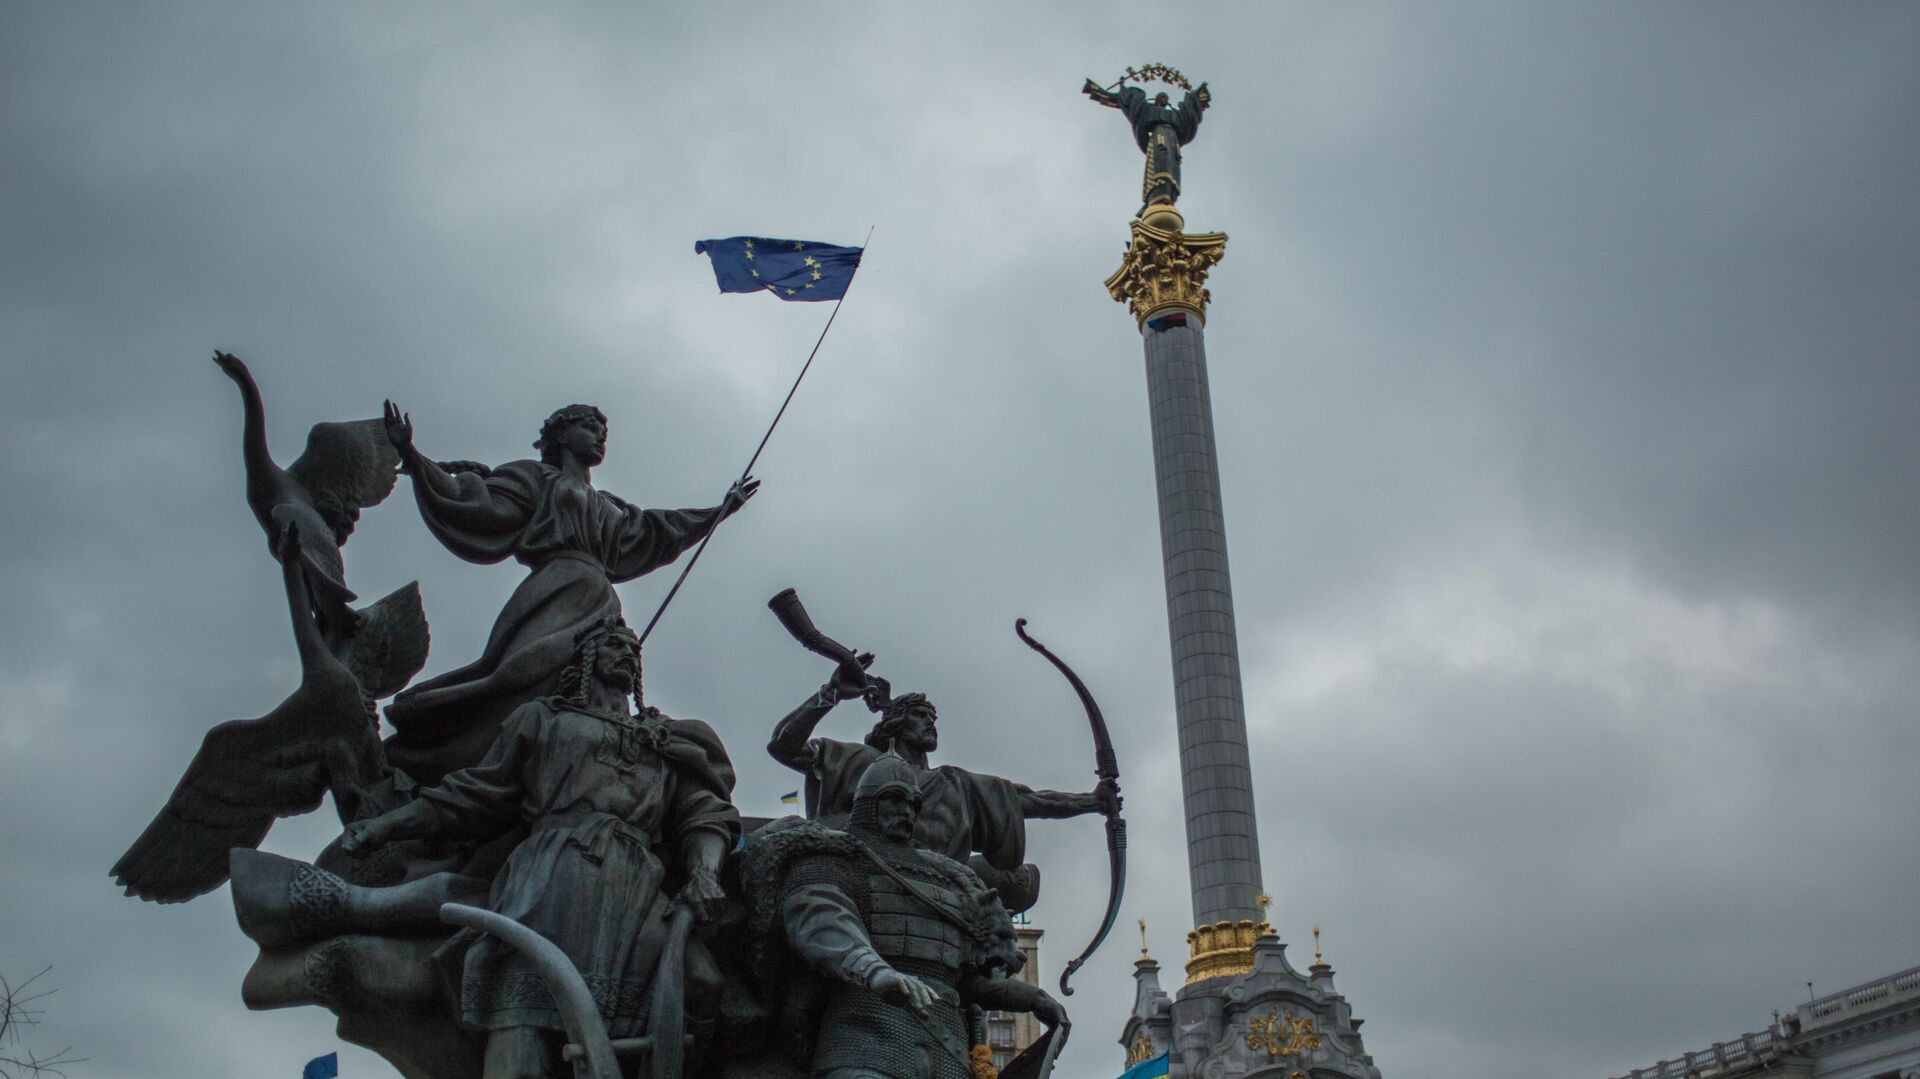 Акция в поддержку евроинтеграции Украины на площади Независимости в Киеве - Sputnik Литва, 1920, 18.12.2021